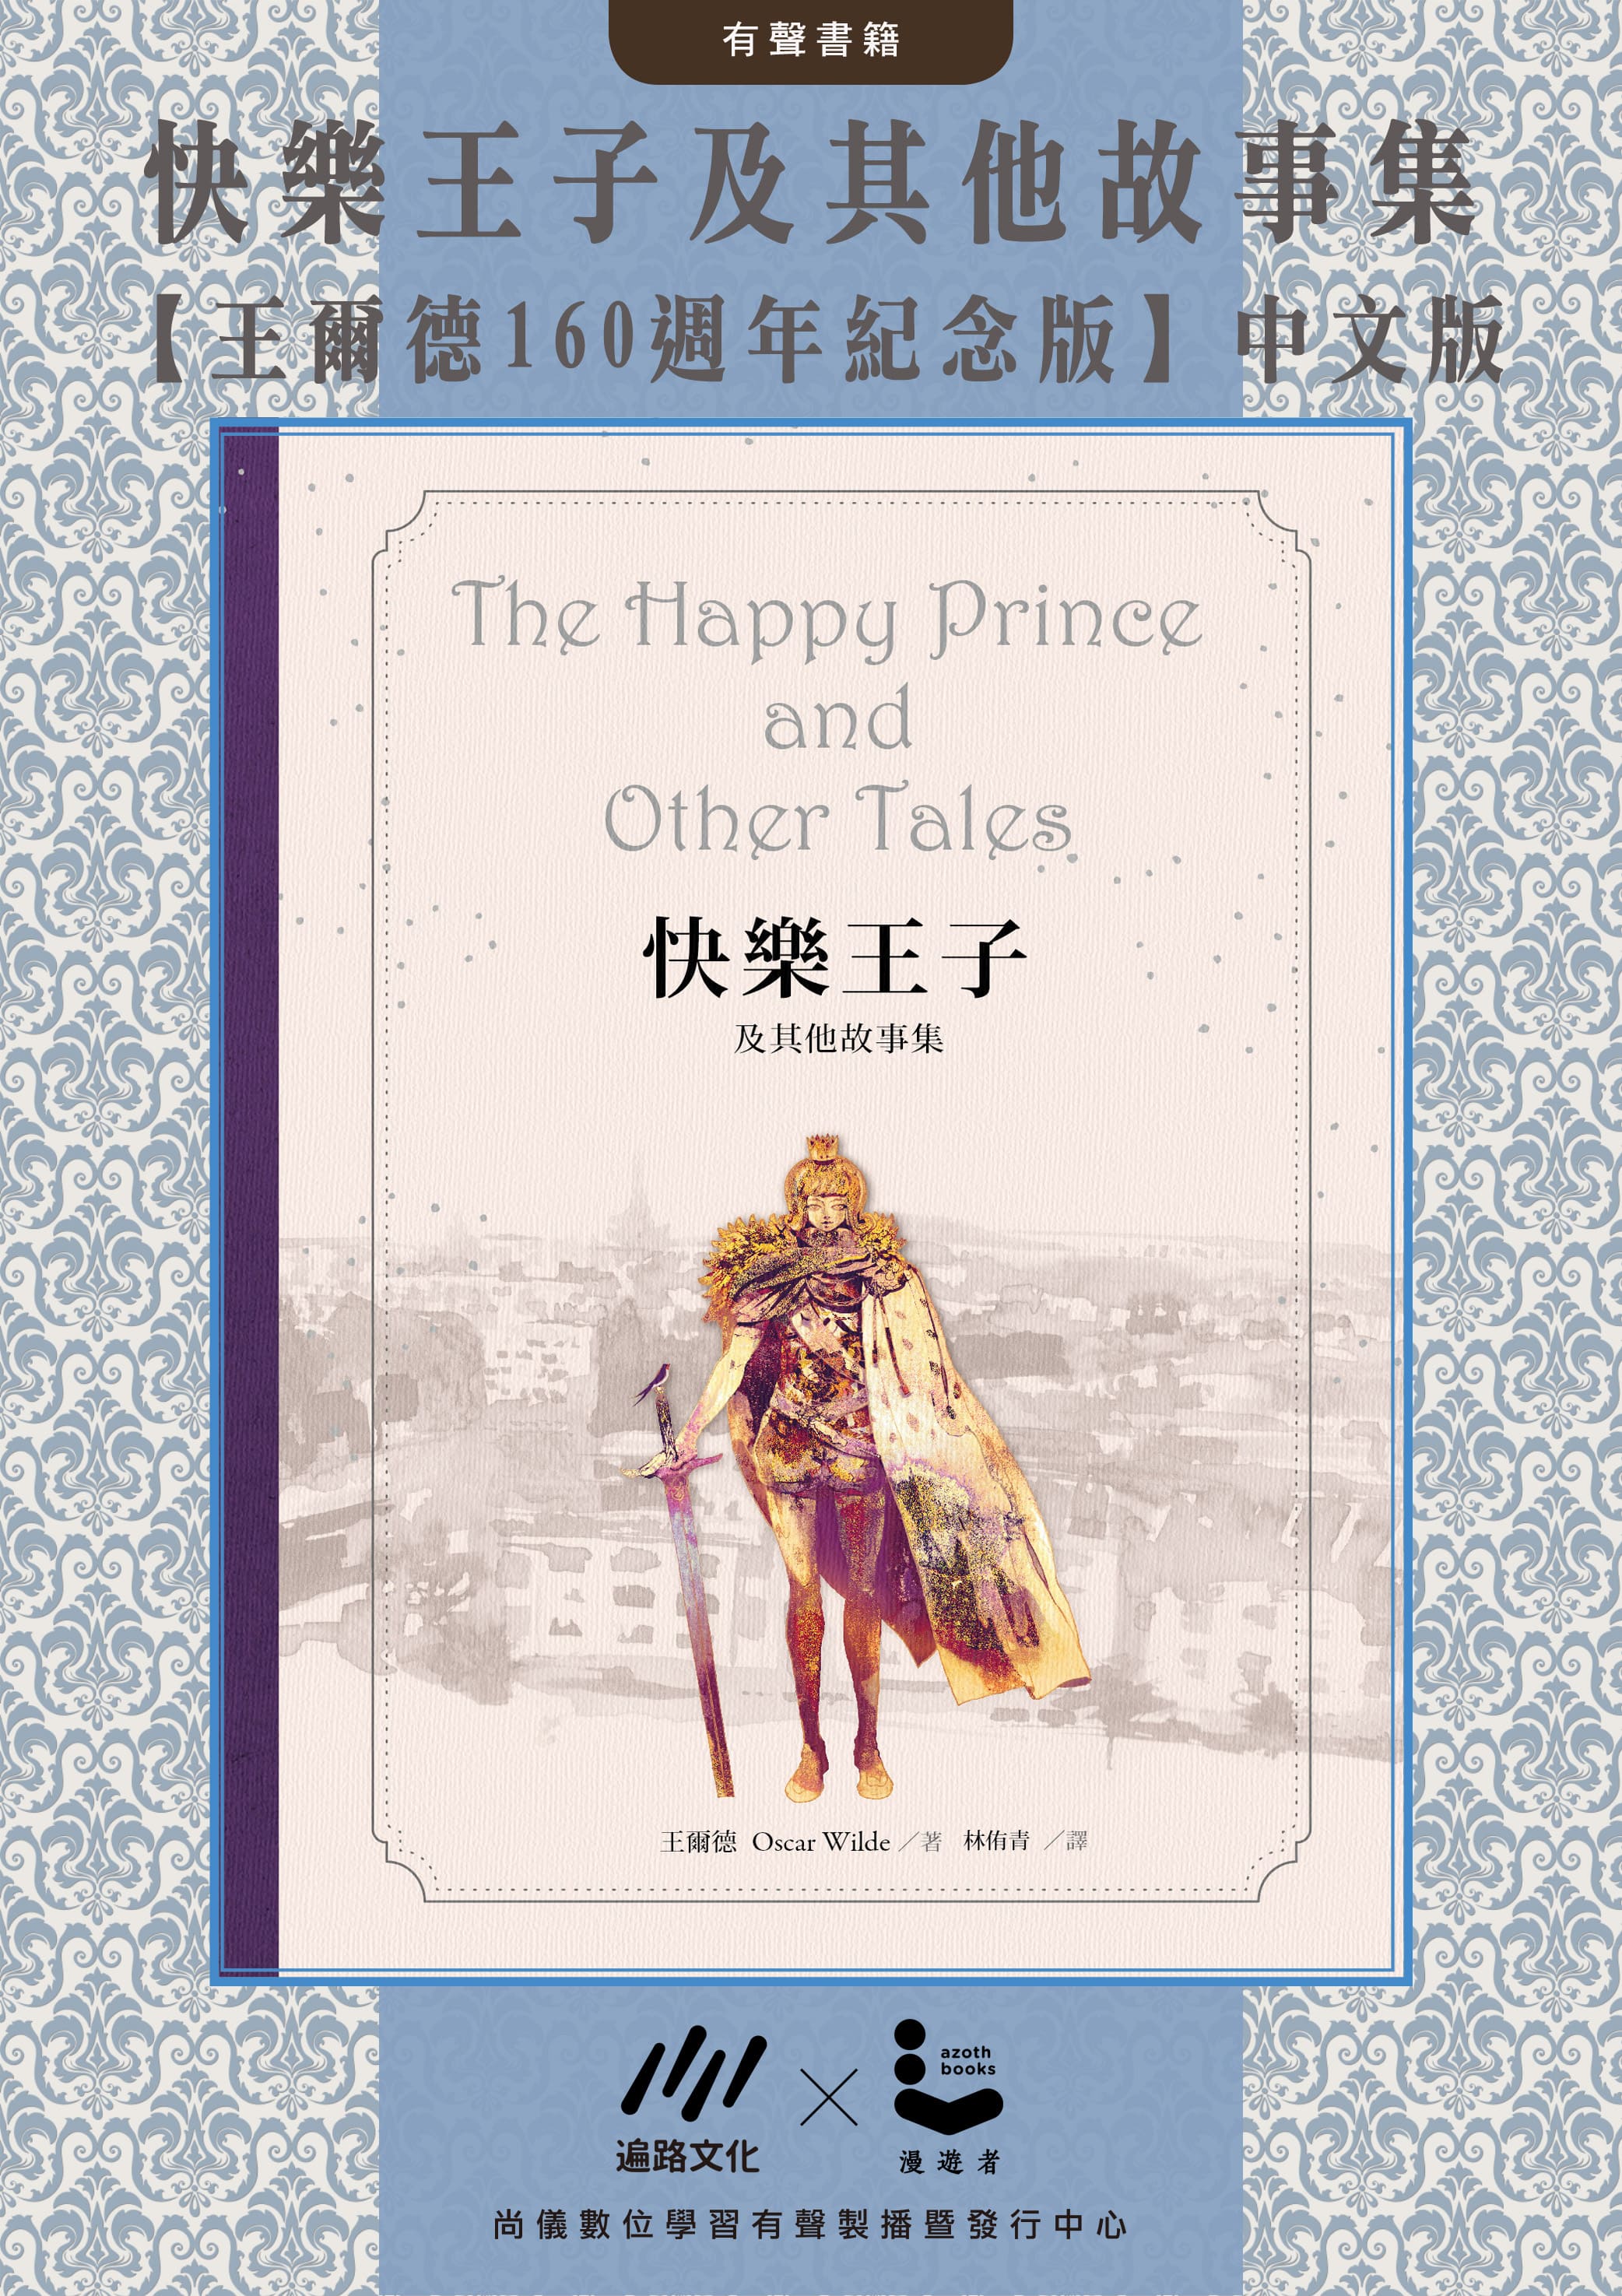 (中文版) 快樂王子及其他故事集【王爾德160週年紀念版】封面圖